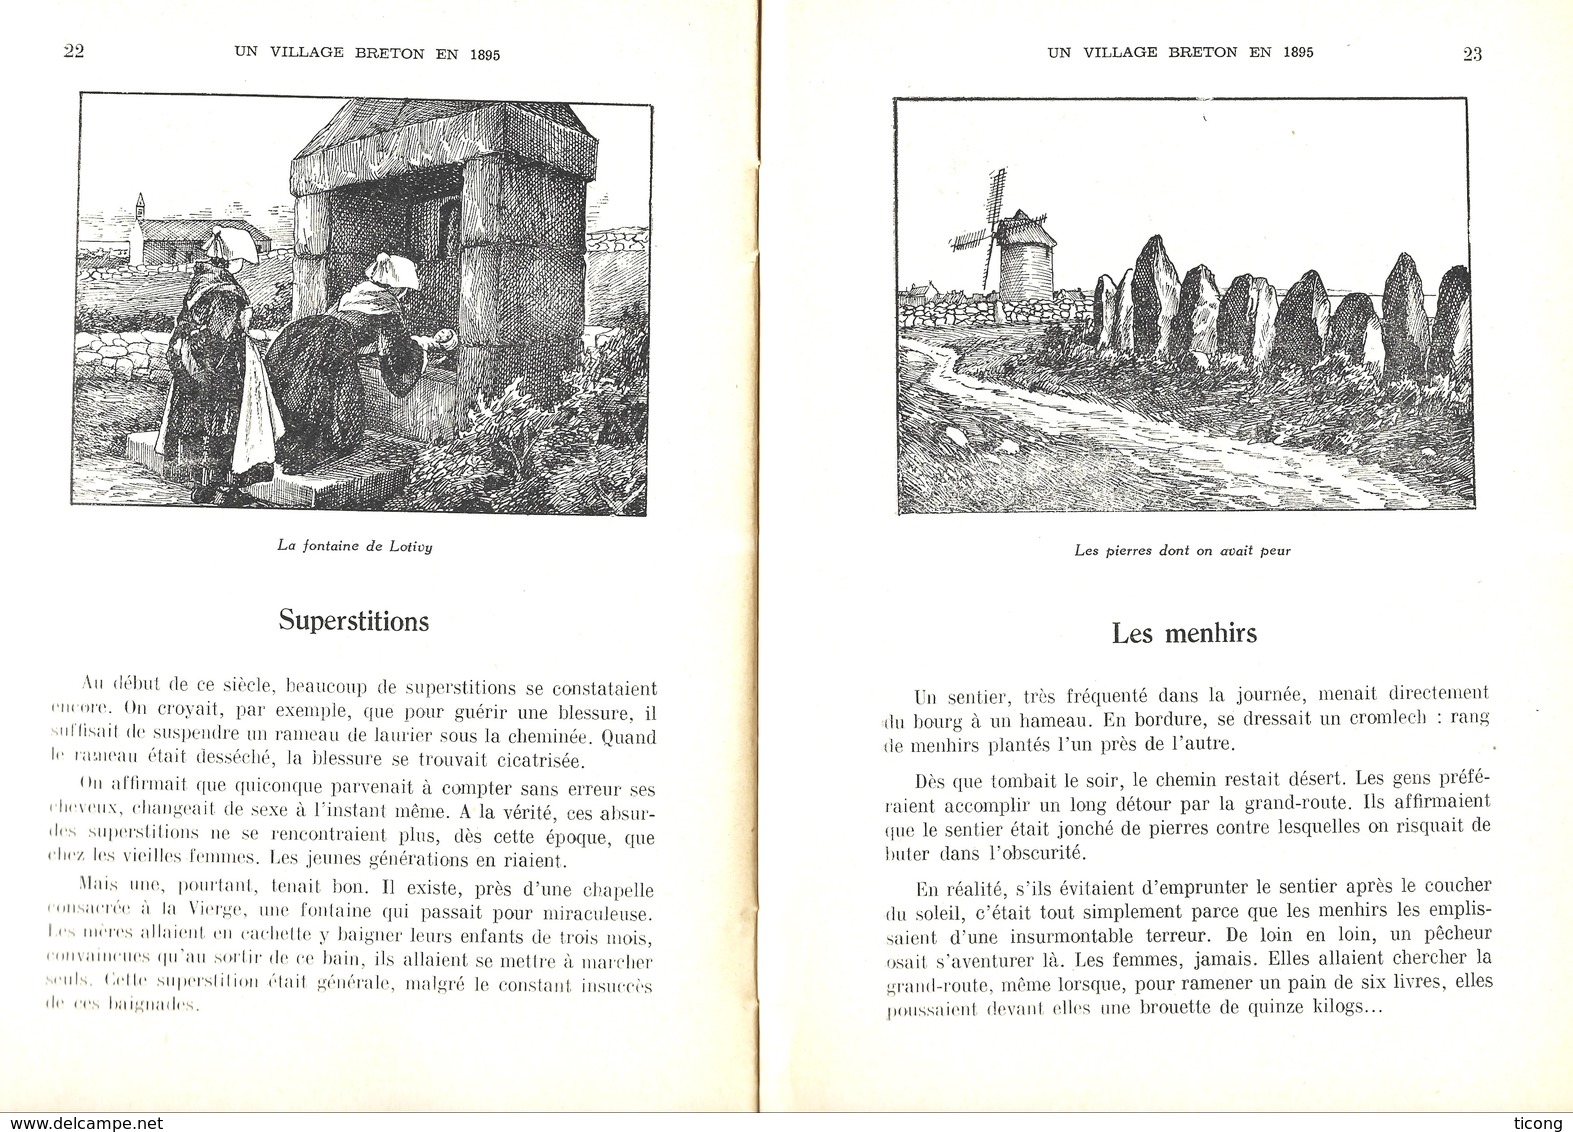 SAINT PIERRE DE QUIBERON MORBIHAN BRETAGNE, HISTOIRE D UN VILLAGE BRETON EN 1895, CARLIER, BIBLIOTHEQUE DE TRAVAIL 1949 - Bretagne